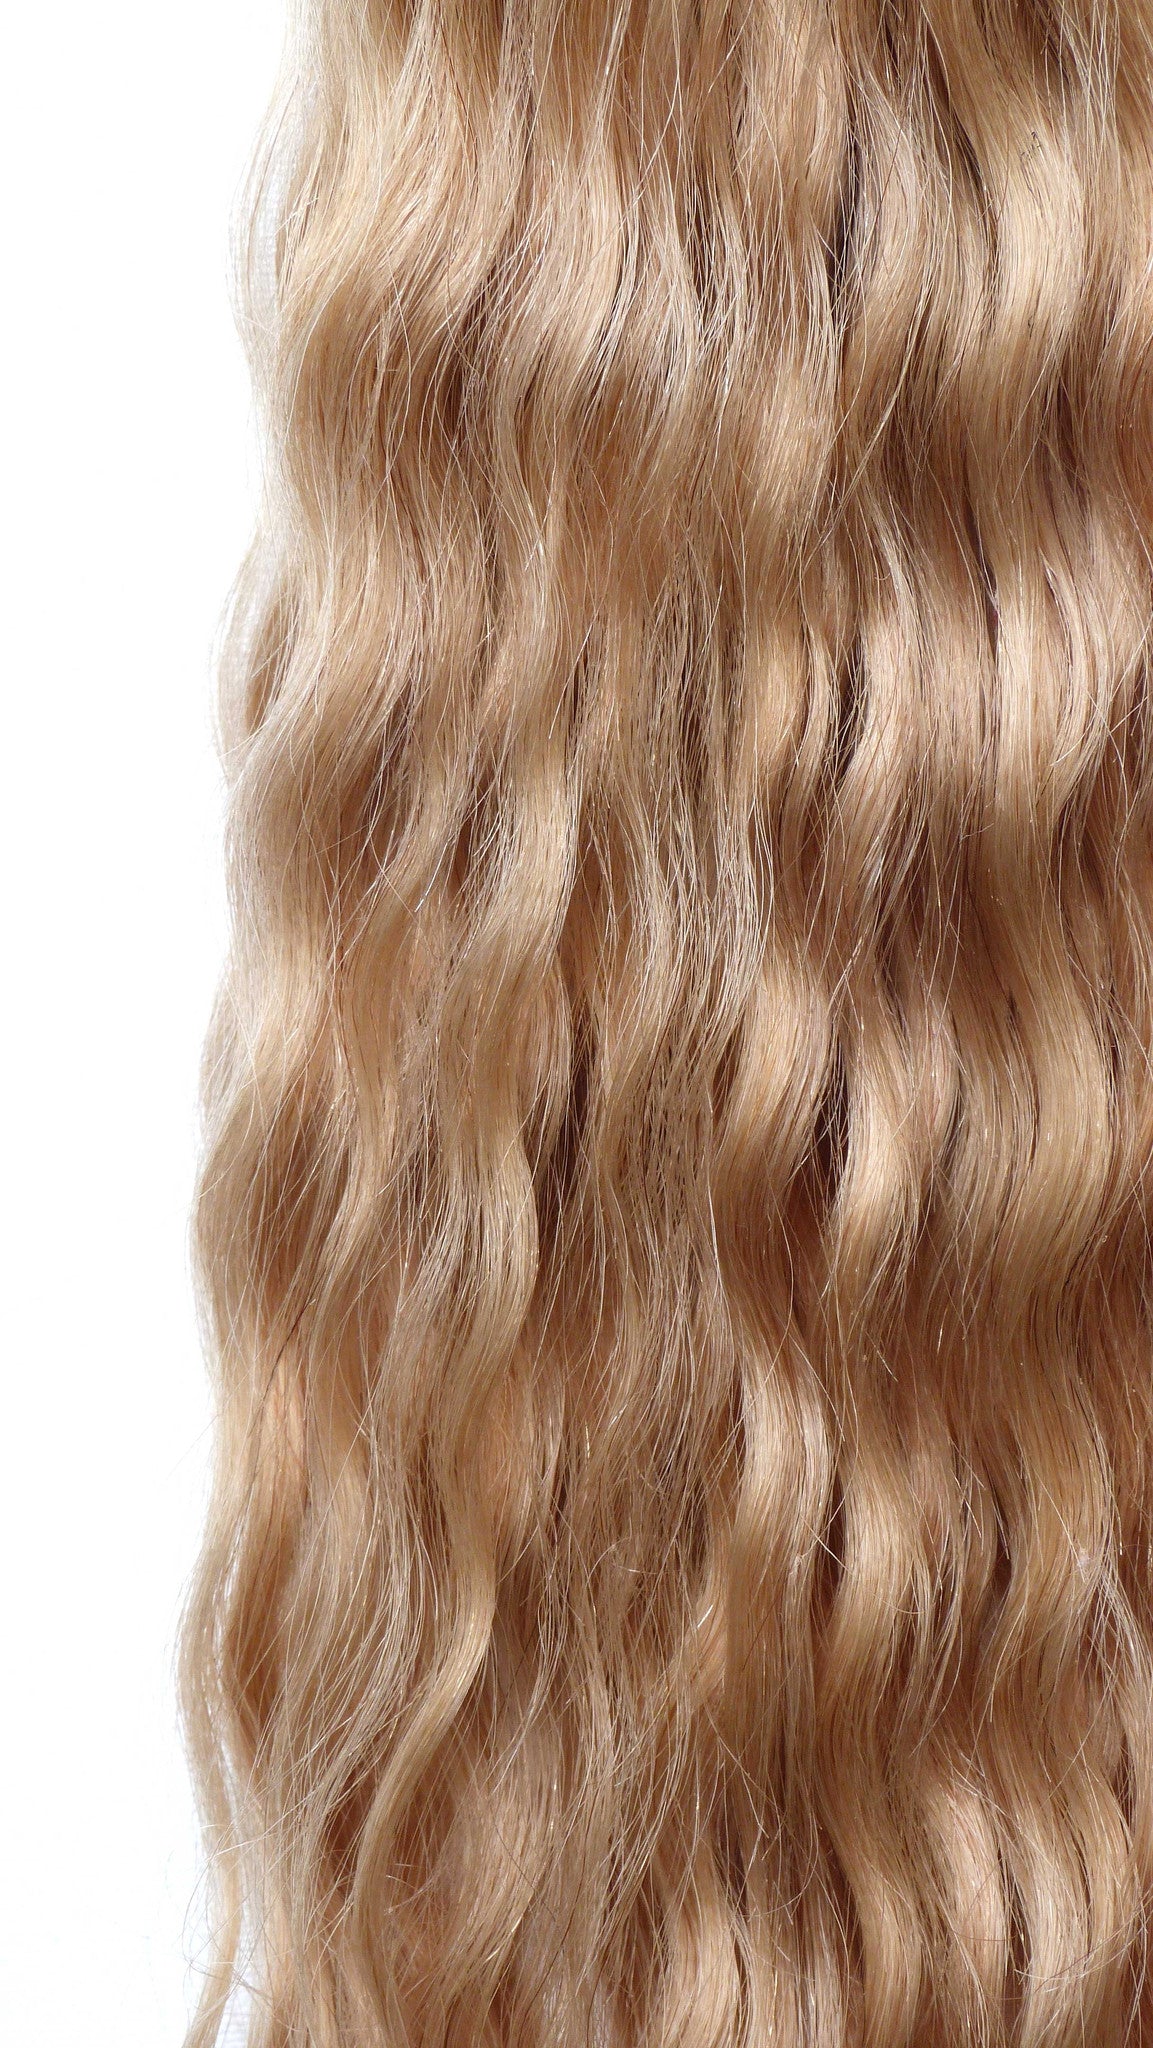 תוספות שיער אנושי בתולה ברזילאית - תוספות מיקרו לולאה-שיער ויופי בתולה, תוספות השיער הטובות ביותר, שיער אנושי בתול אמיתי.